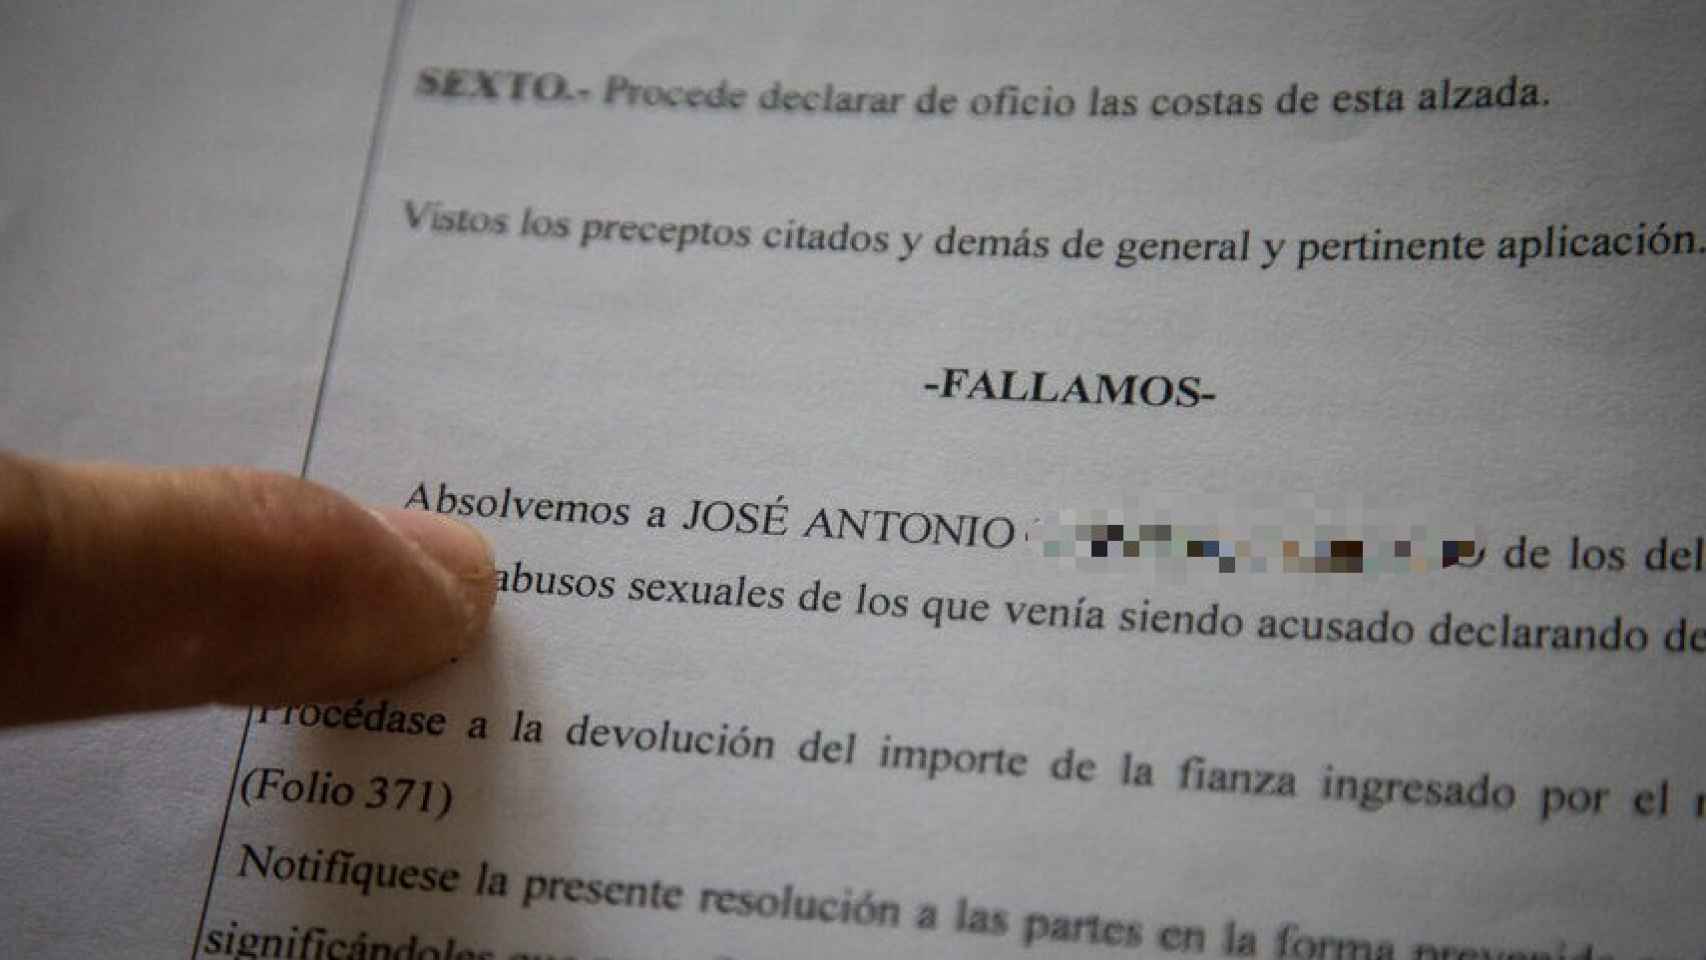 Sentencia de absolución sobre los cargos por delitos sexuales que se imputaban a José Antonio sobre sus hijos.